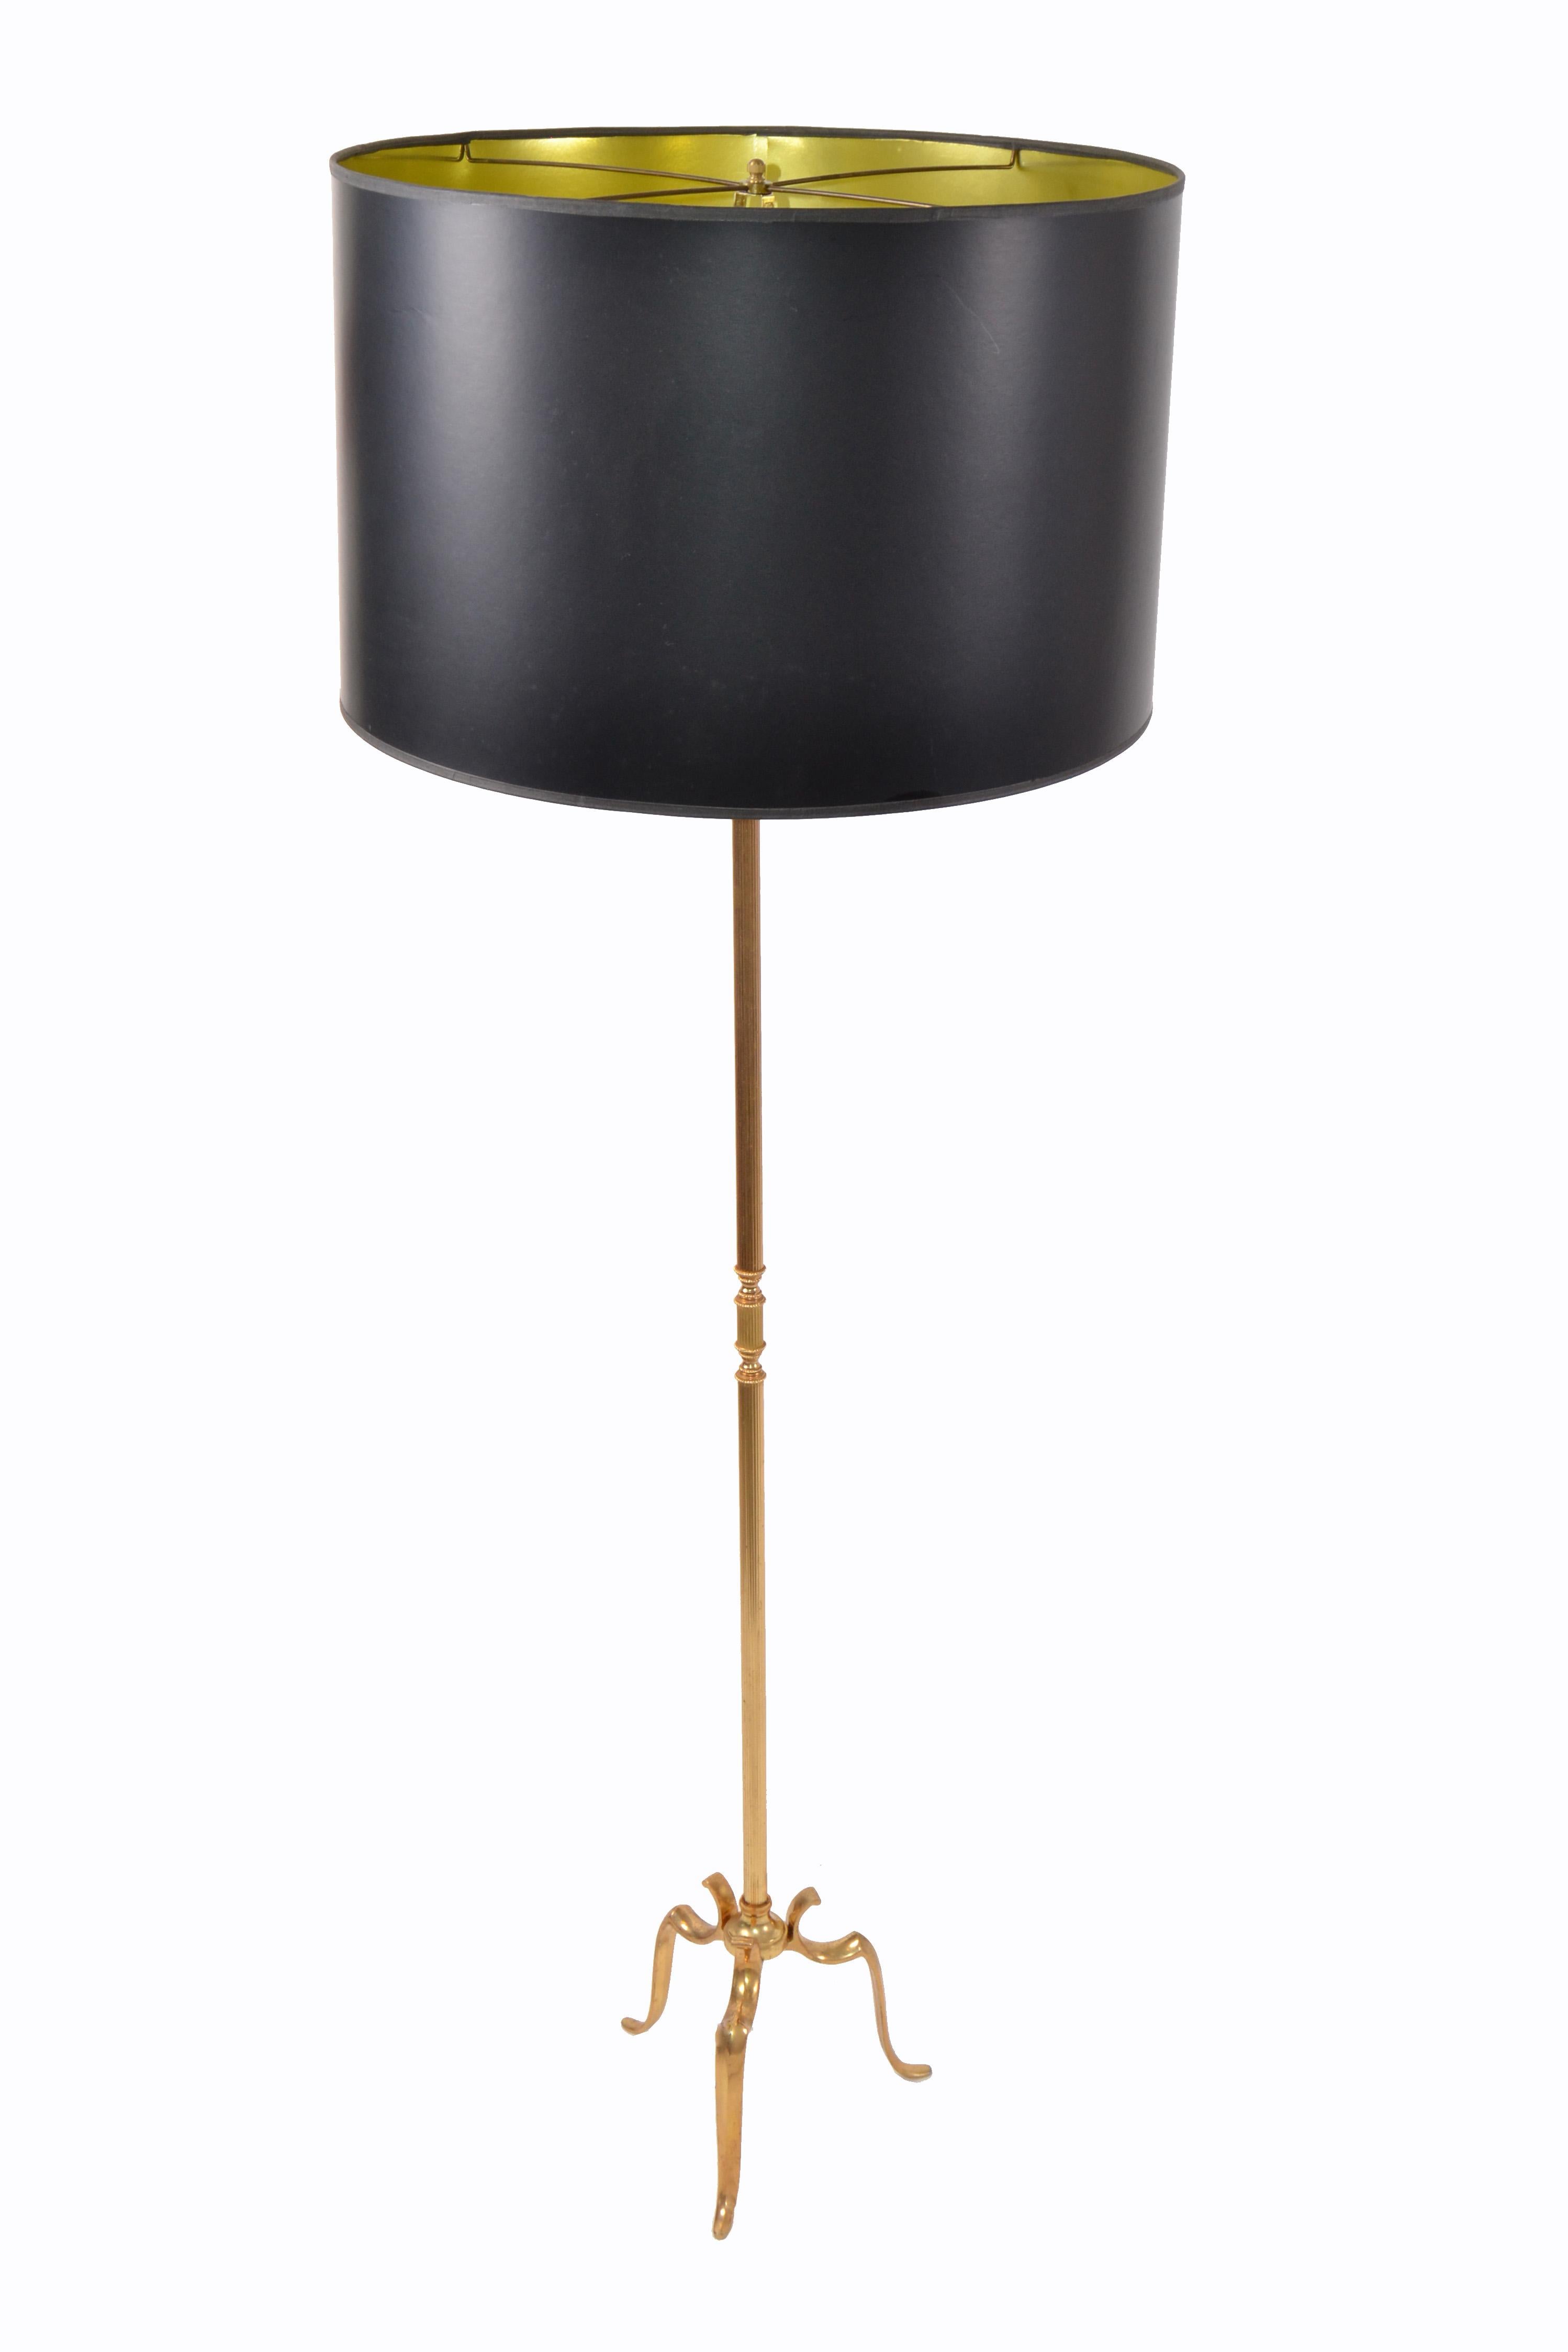 Magnifique lampadaire néoclassique en bronze de la Maison Baguès, France.
Base du trépied : 11 pouces
Câblé pour les États-Unis et en état de marche.
Dimensions de l'abat-jour :
Diamètre 22 pouces, hauteur 14 pouces.